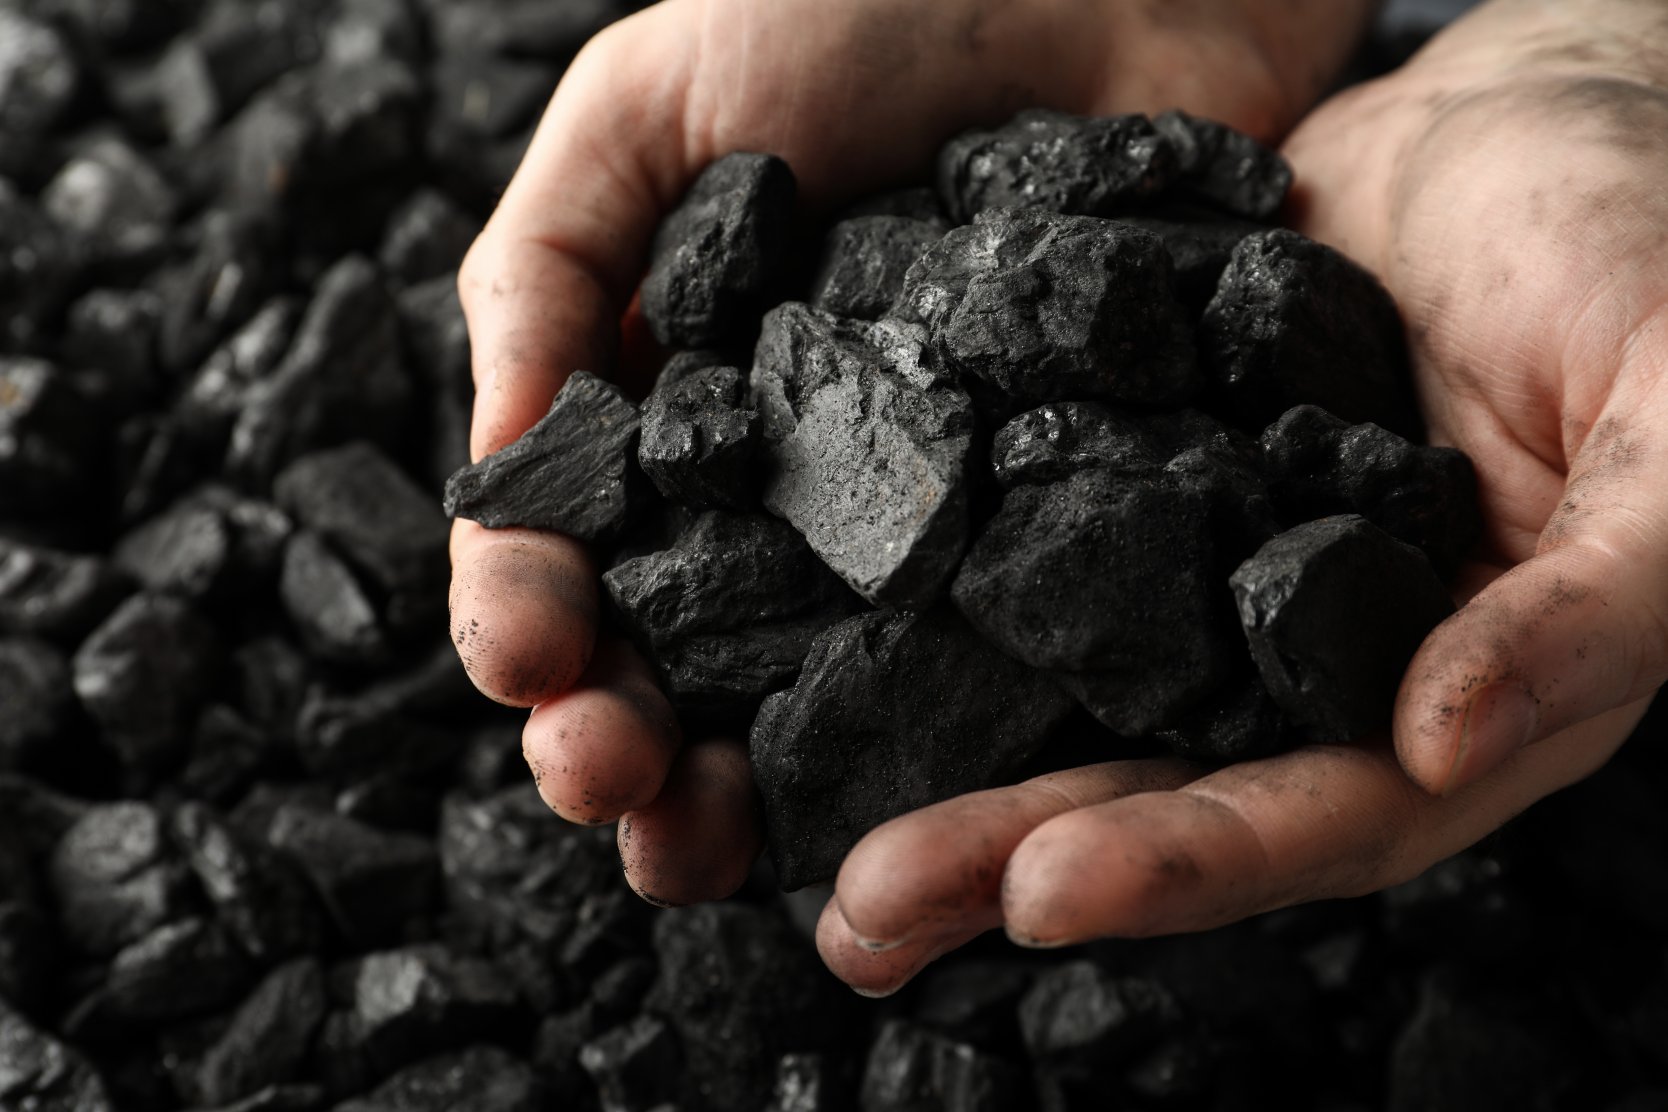 Большие запасы каменного угля